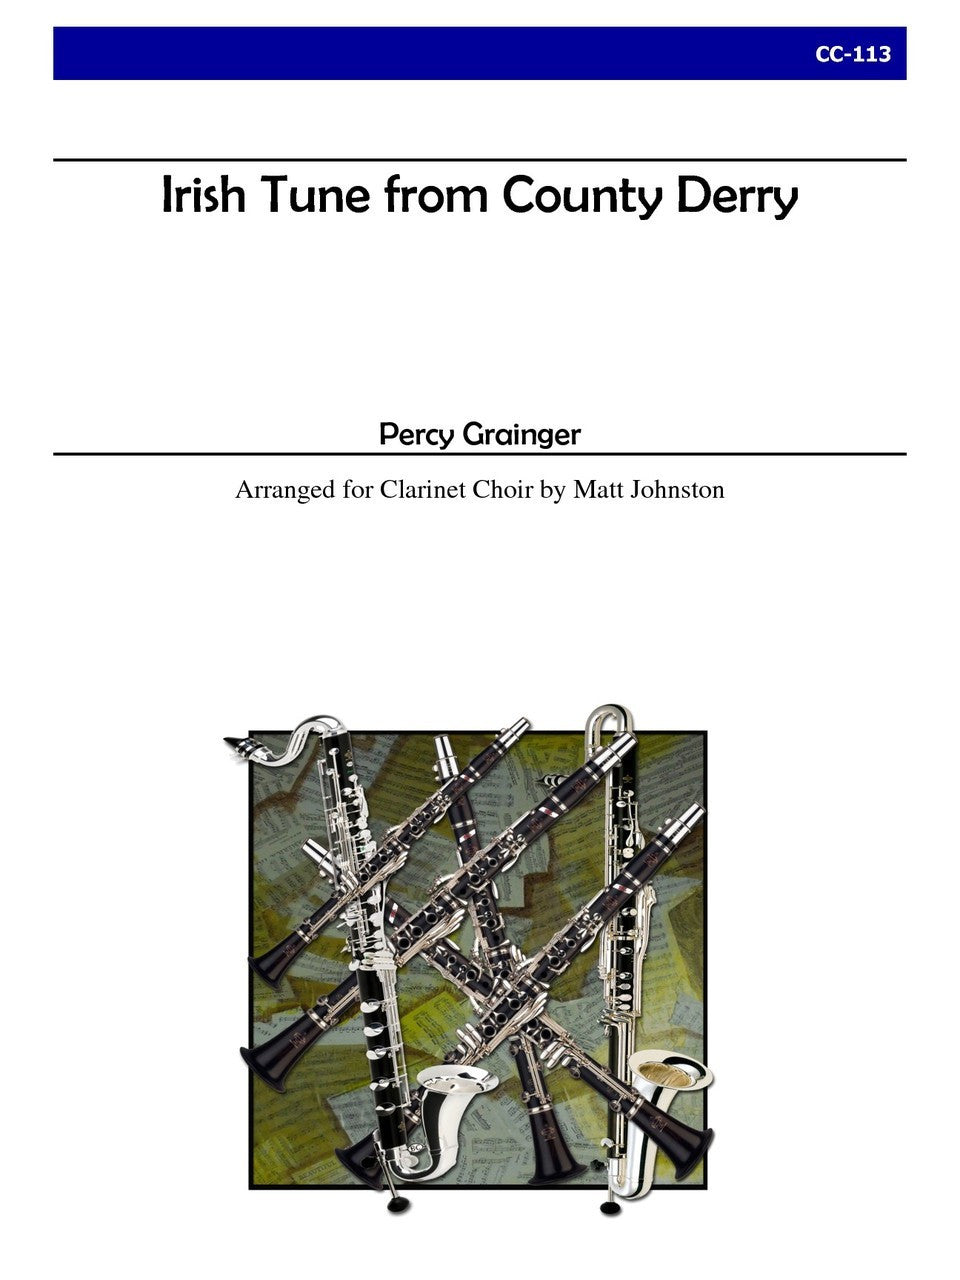 デリー地方のアイルランド民謡（パーシー・グレインジャー） (クラリネット八重奏)【Irish Tune from County Derry】